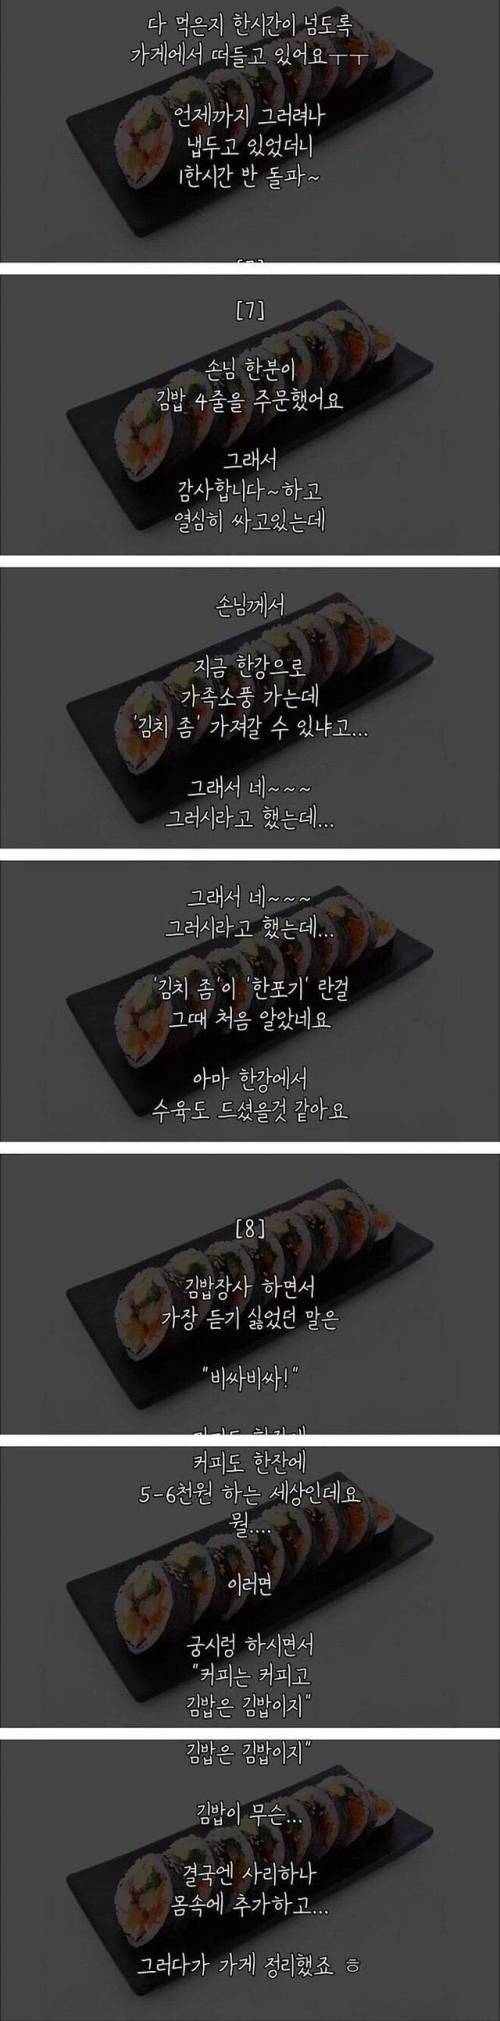 [스압] 김밥 장사를 접은 이유.jpg